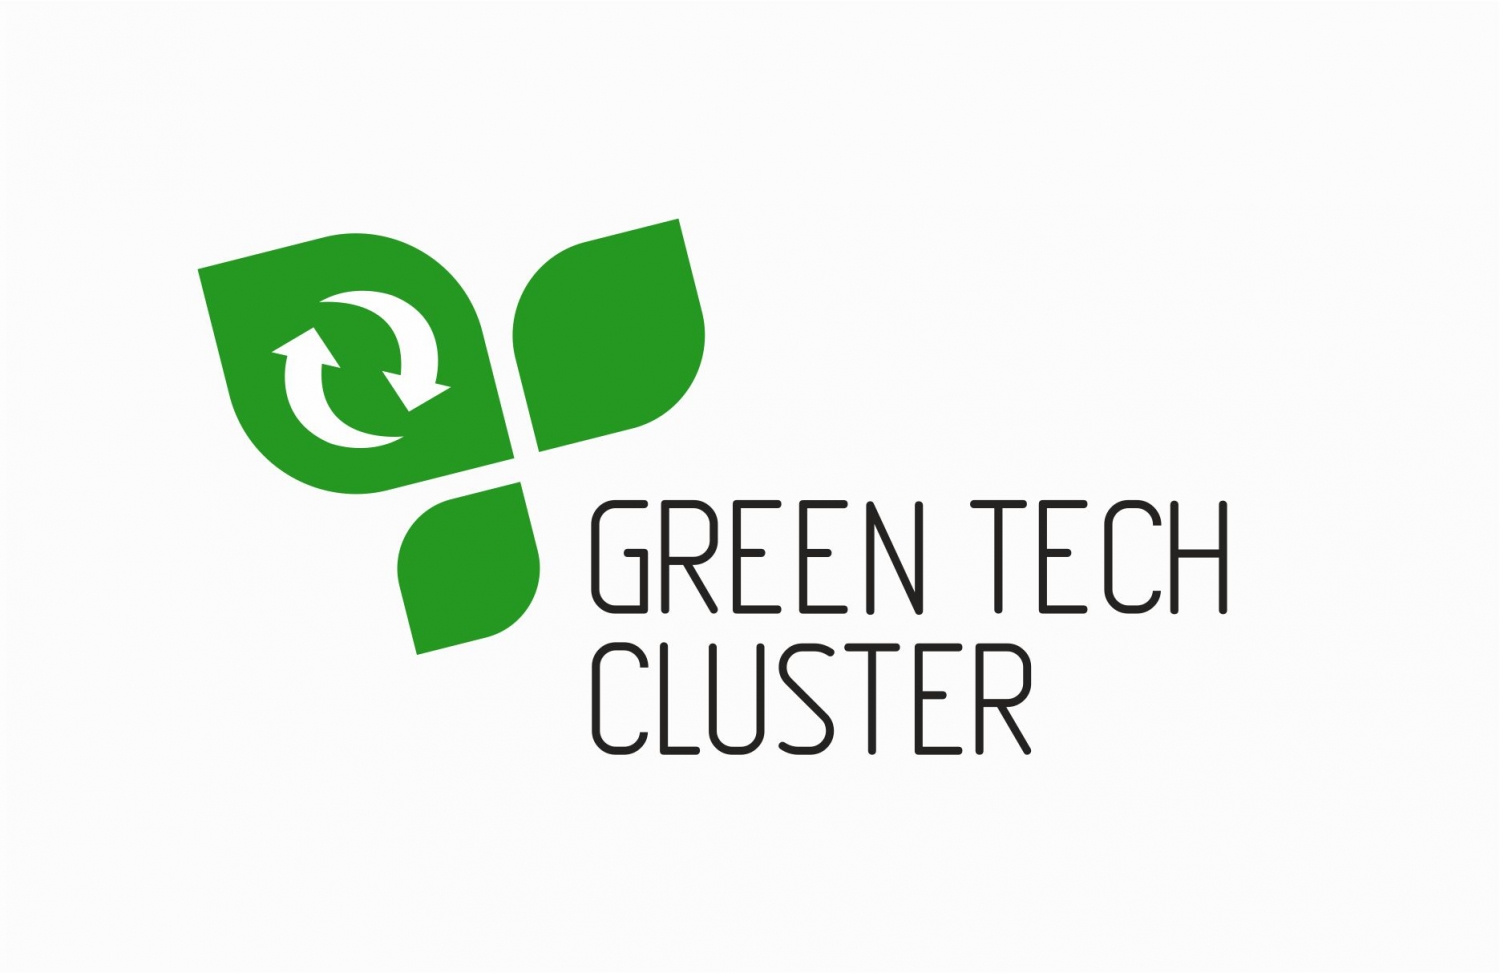 Green tech cluster